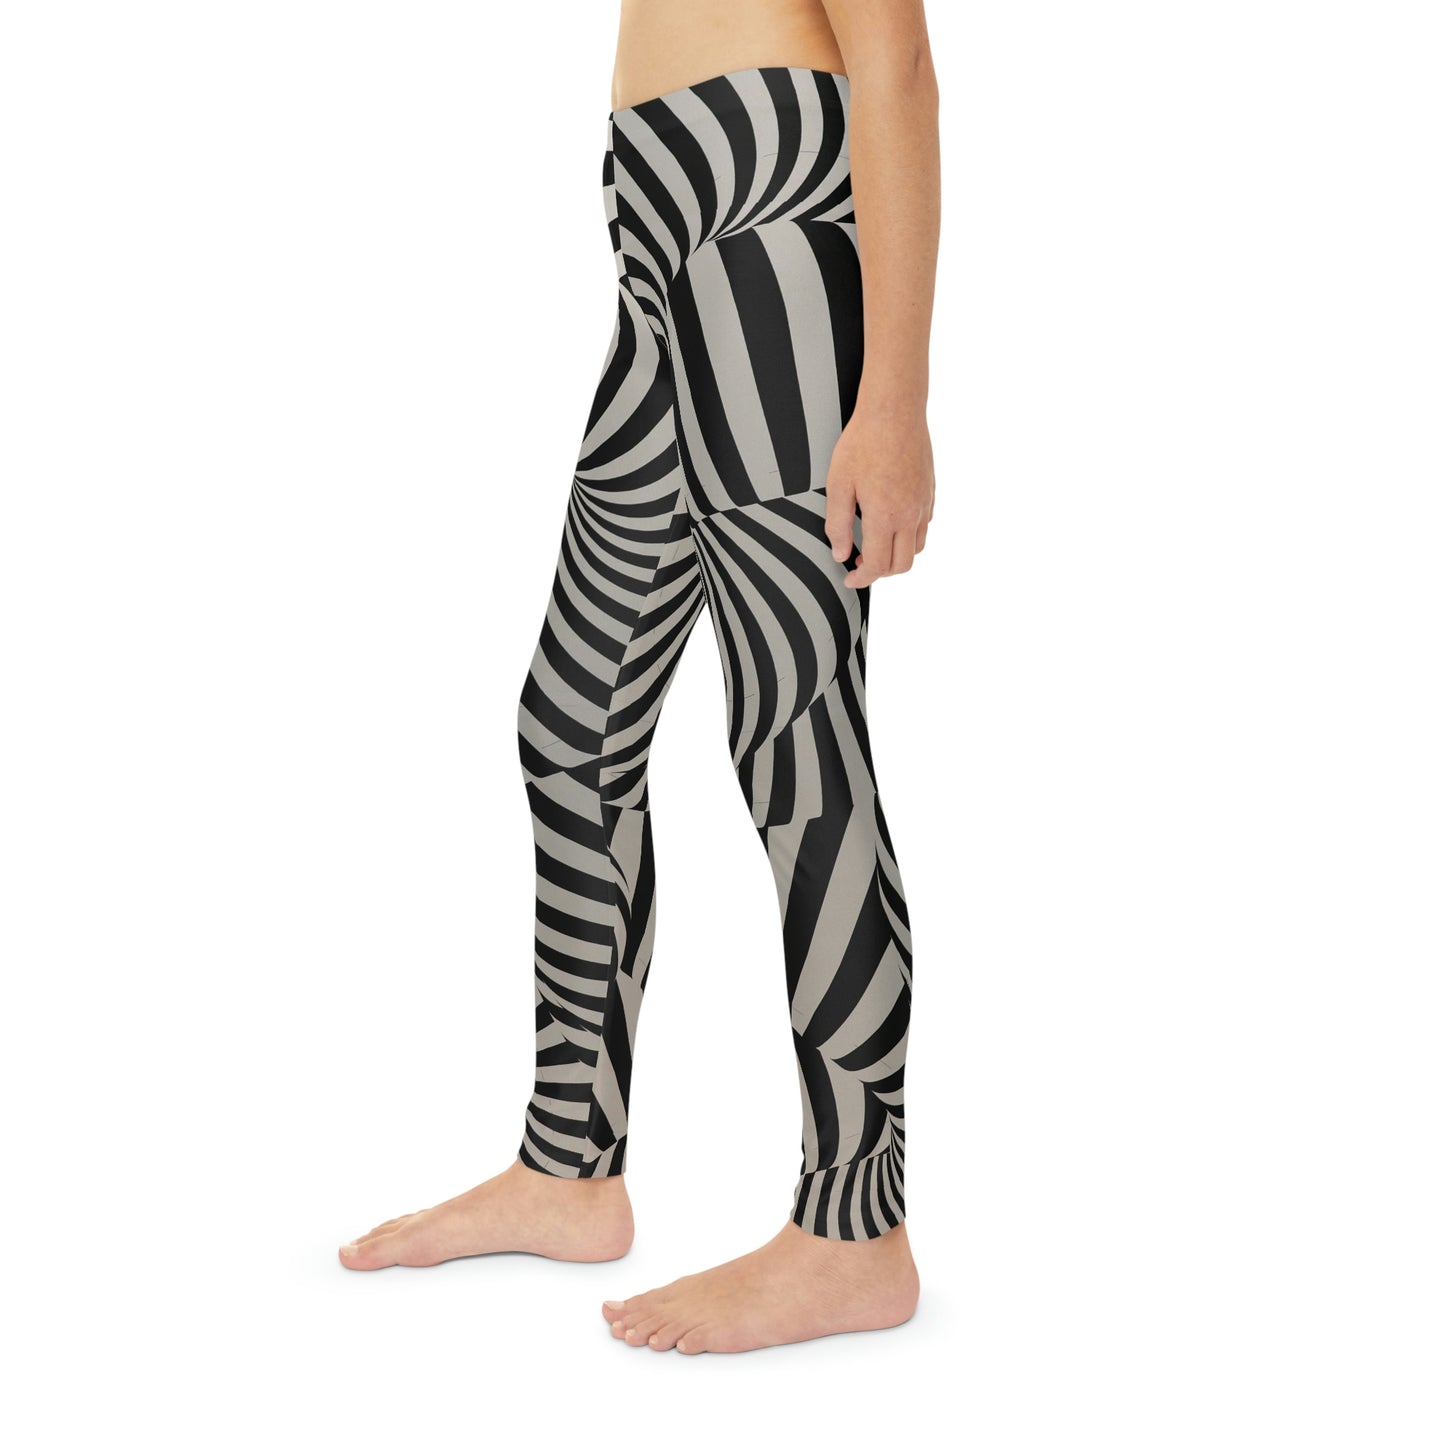 Zebra Youth Full-Length Leggings